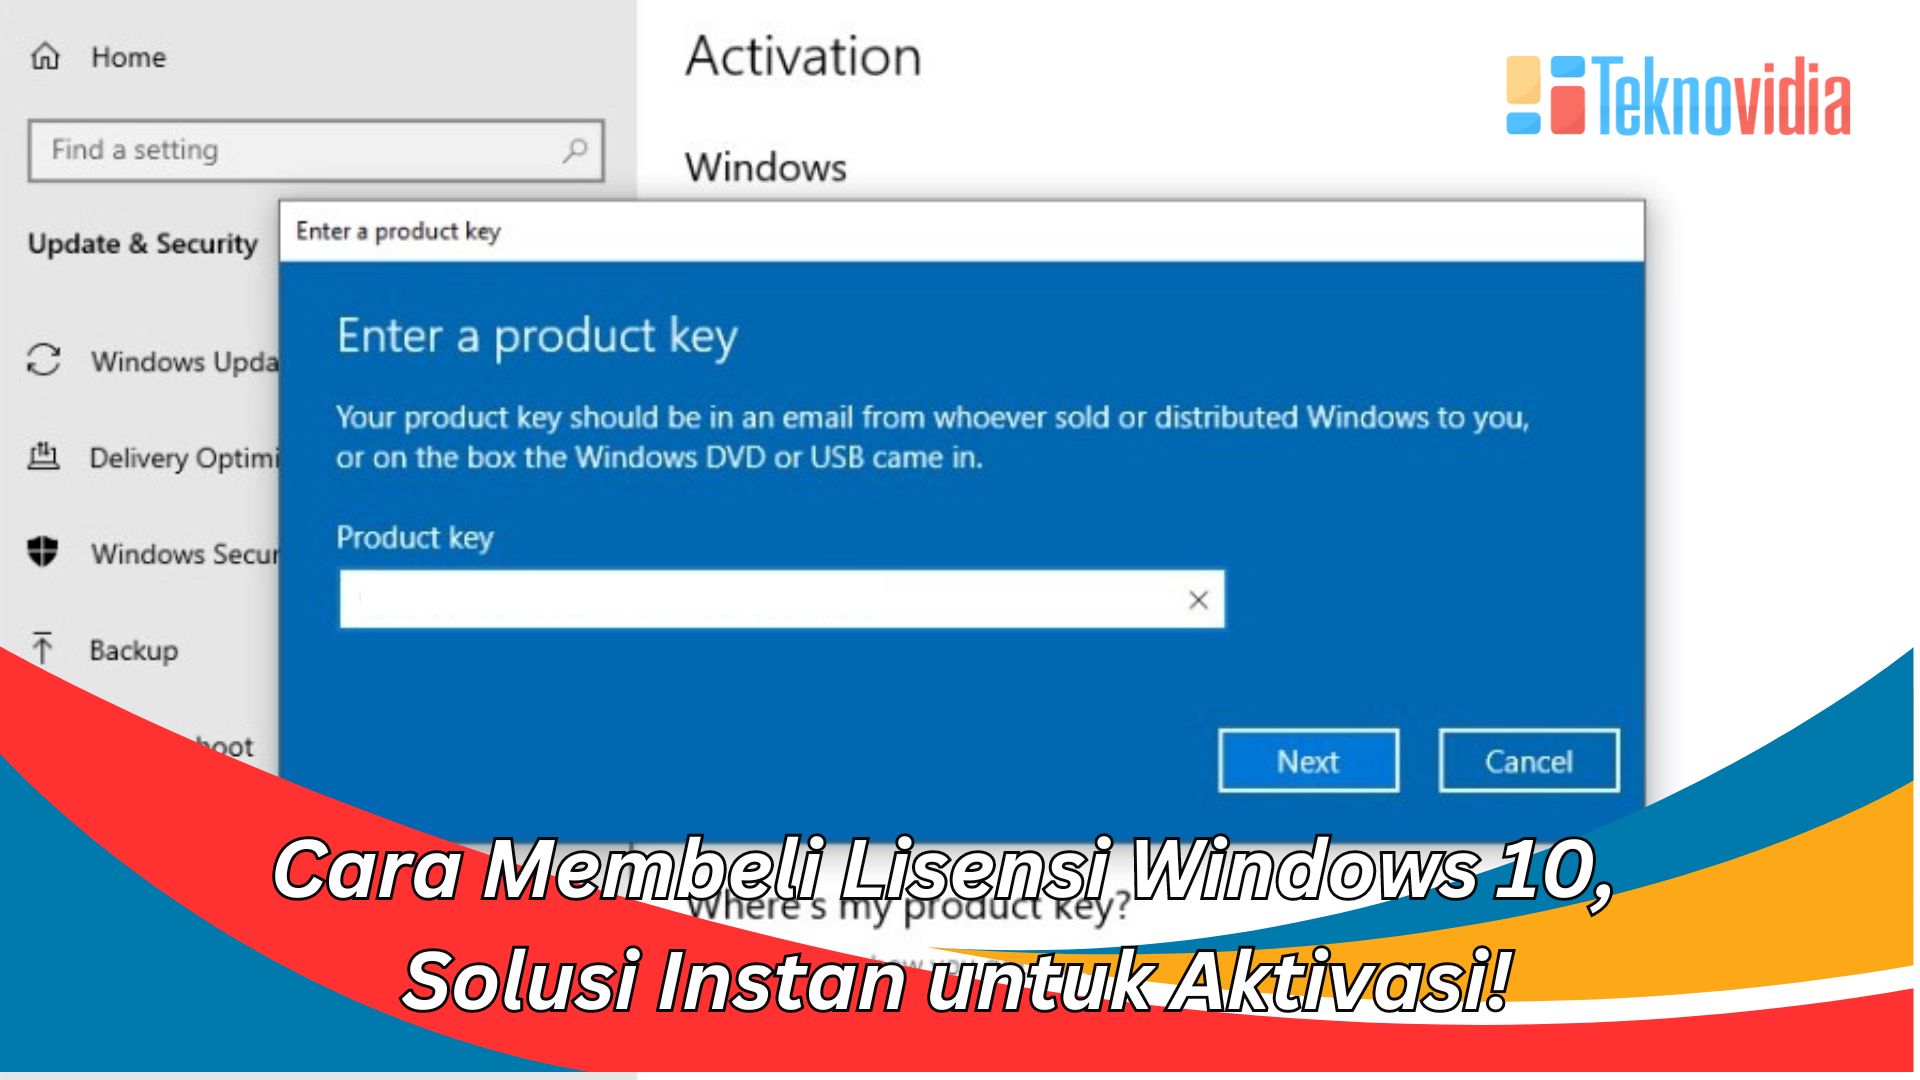 Cara Membeli Lisensi Windows 10, Solusi Instan untuk Aktivasi!